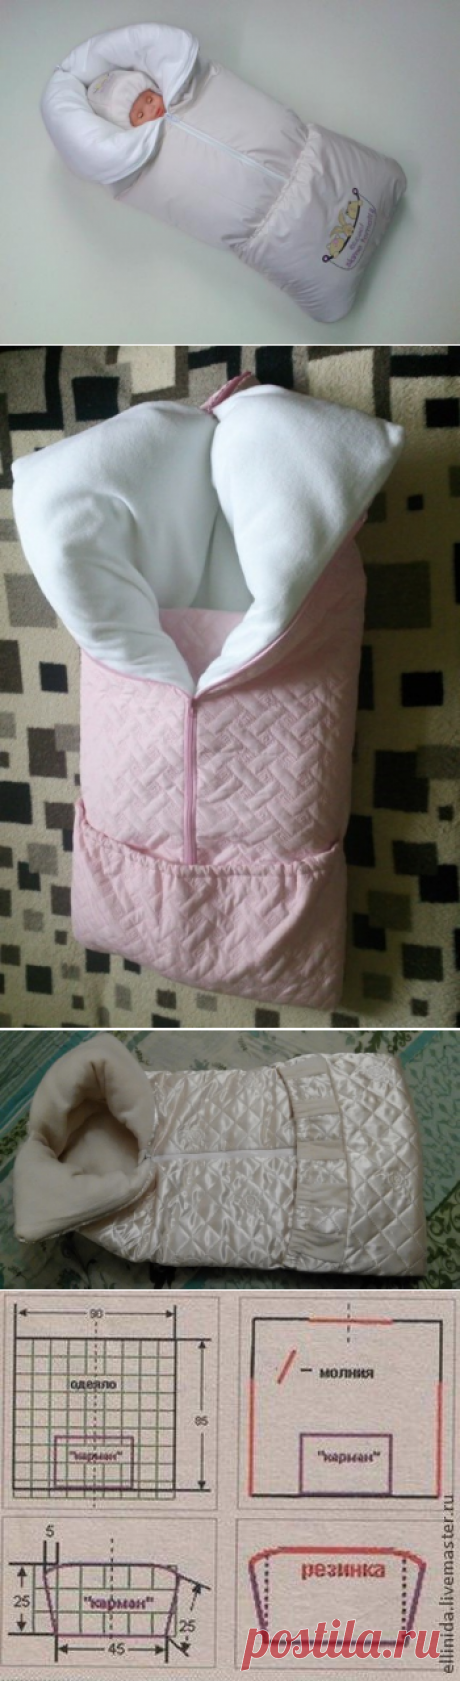 Шьем одеяло-трансформер для новорожденного - Ярмарка Мастеров - ручная работа, handmade